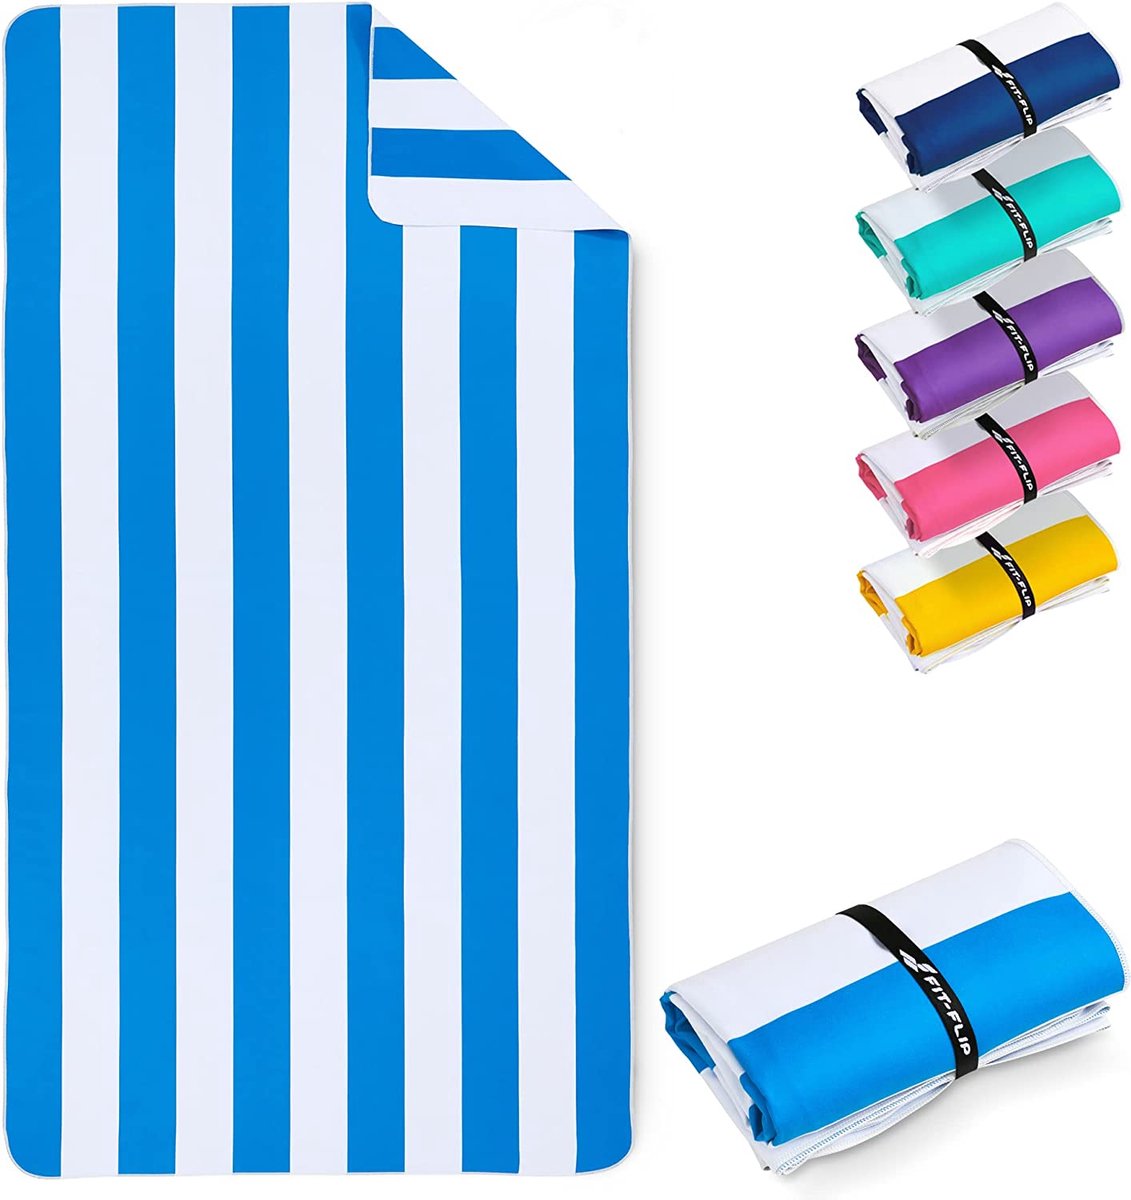 Microvezel strandhanddoek groot, licht en sneldrogend – 100% gerecyclede microvezel handdoek – 200cmx90 cm of 160cmx90cm